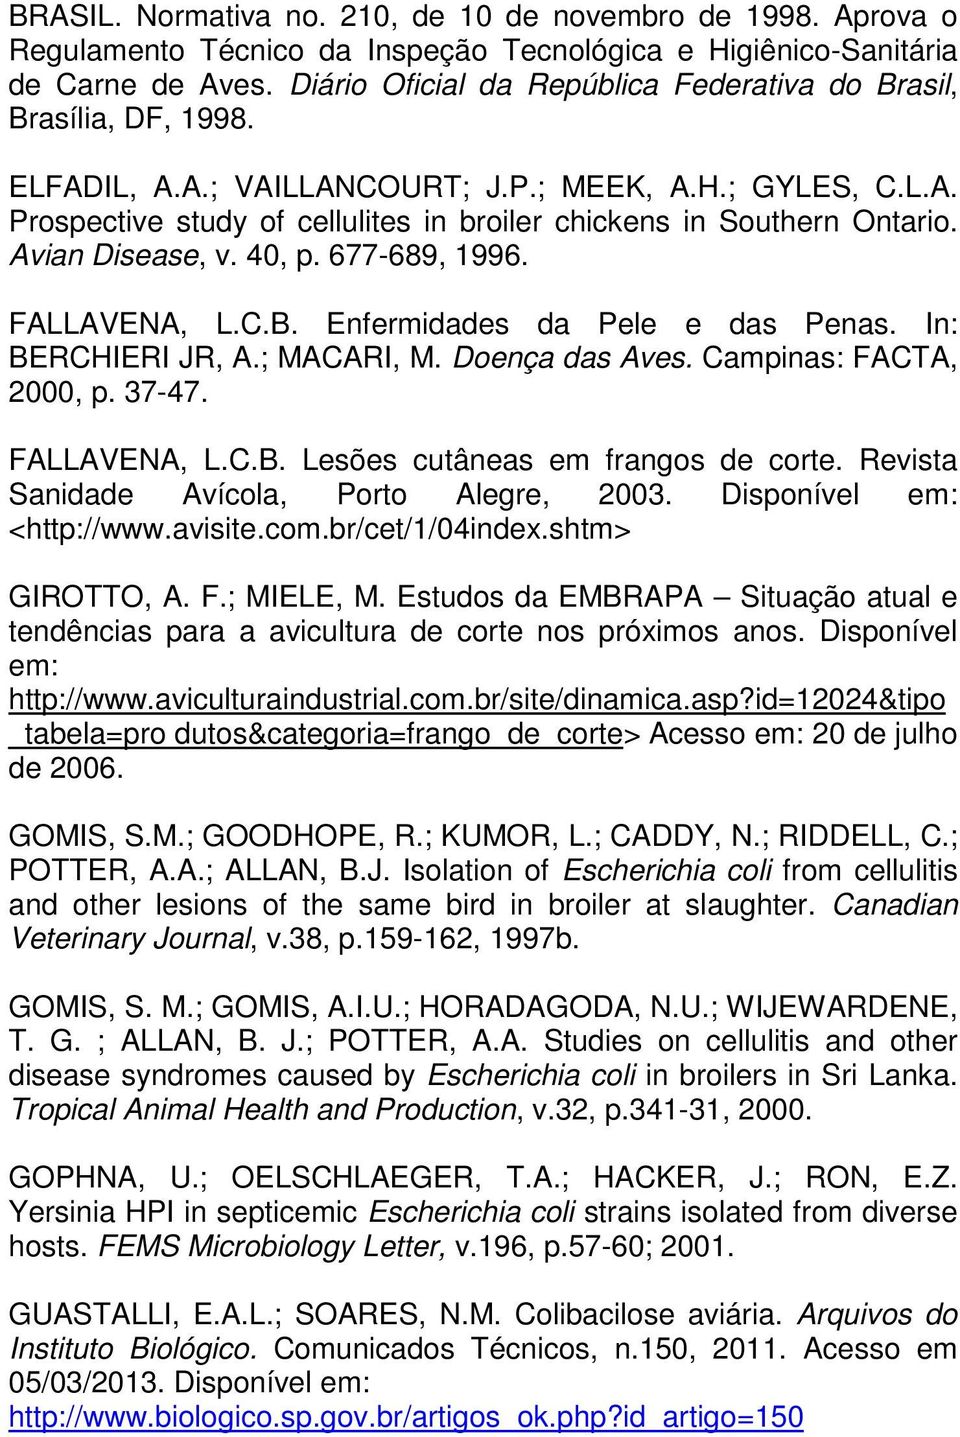 Avian Disease, v. 40, p. 677-689, 1996. FALLAVENA, L.C.B. Enfermidades da Pele e das Penas. In: BERCHIERI JR, A.; MACARI, M. Doença das Aves. Campinas: FACTA, 2000, p. 37-47. FALLAVENA, L.C.B. Lesões cutâneas em frangos de corte.